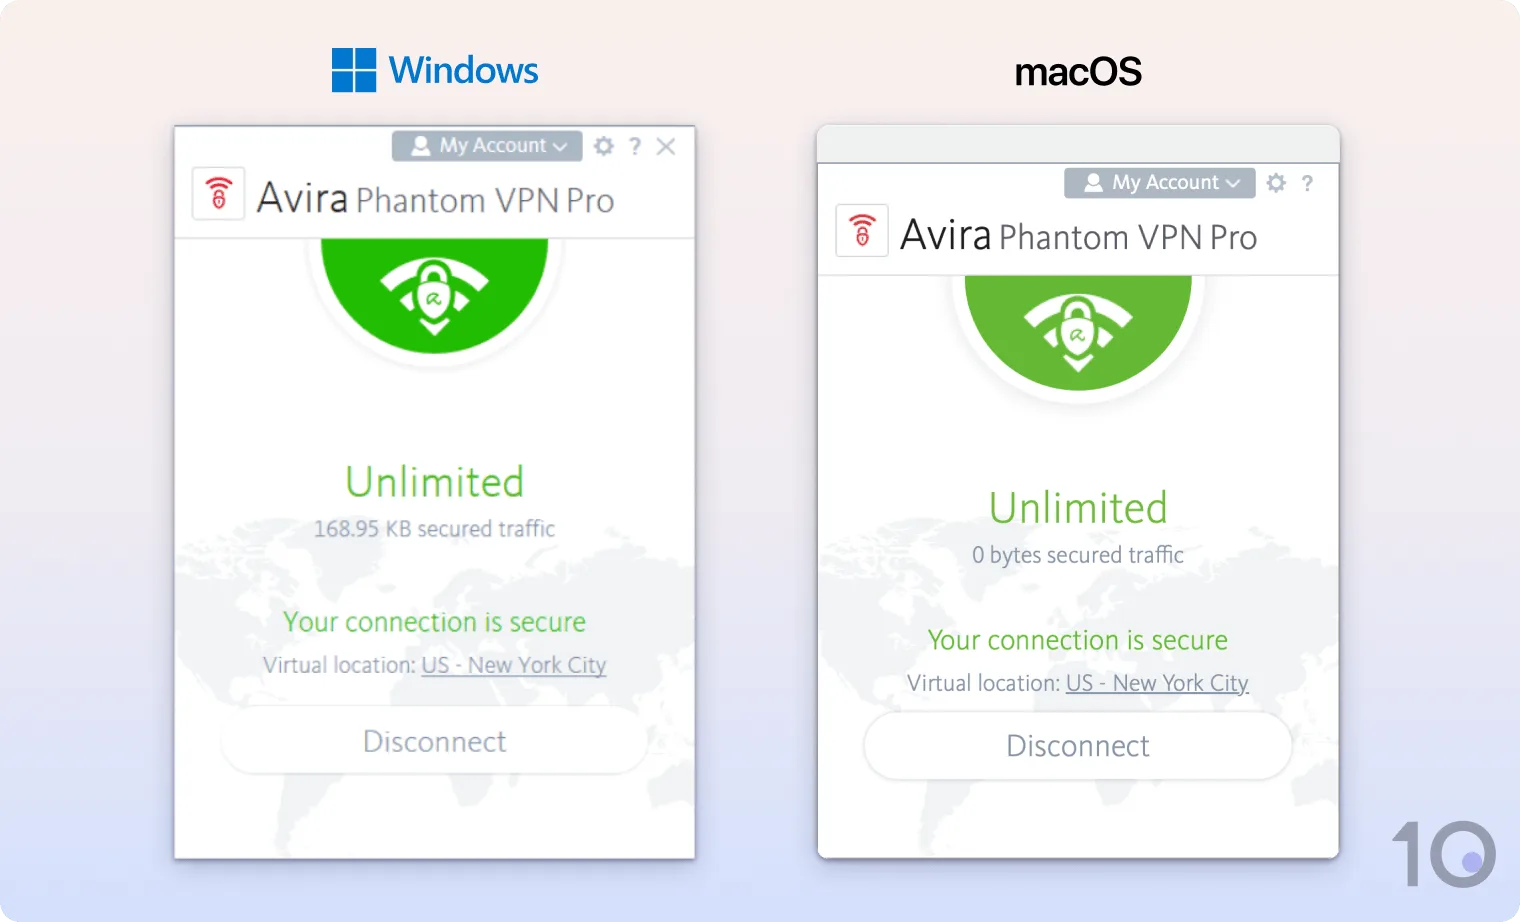 The Avira Phantom VPN apps for Windows and macOS